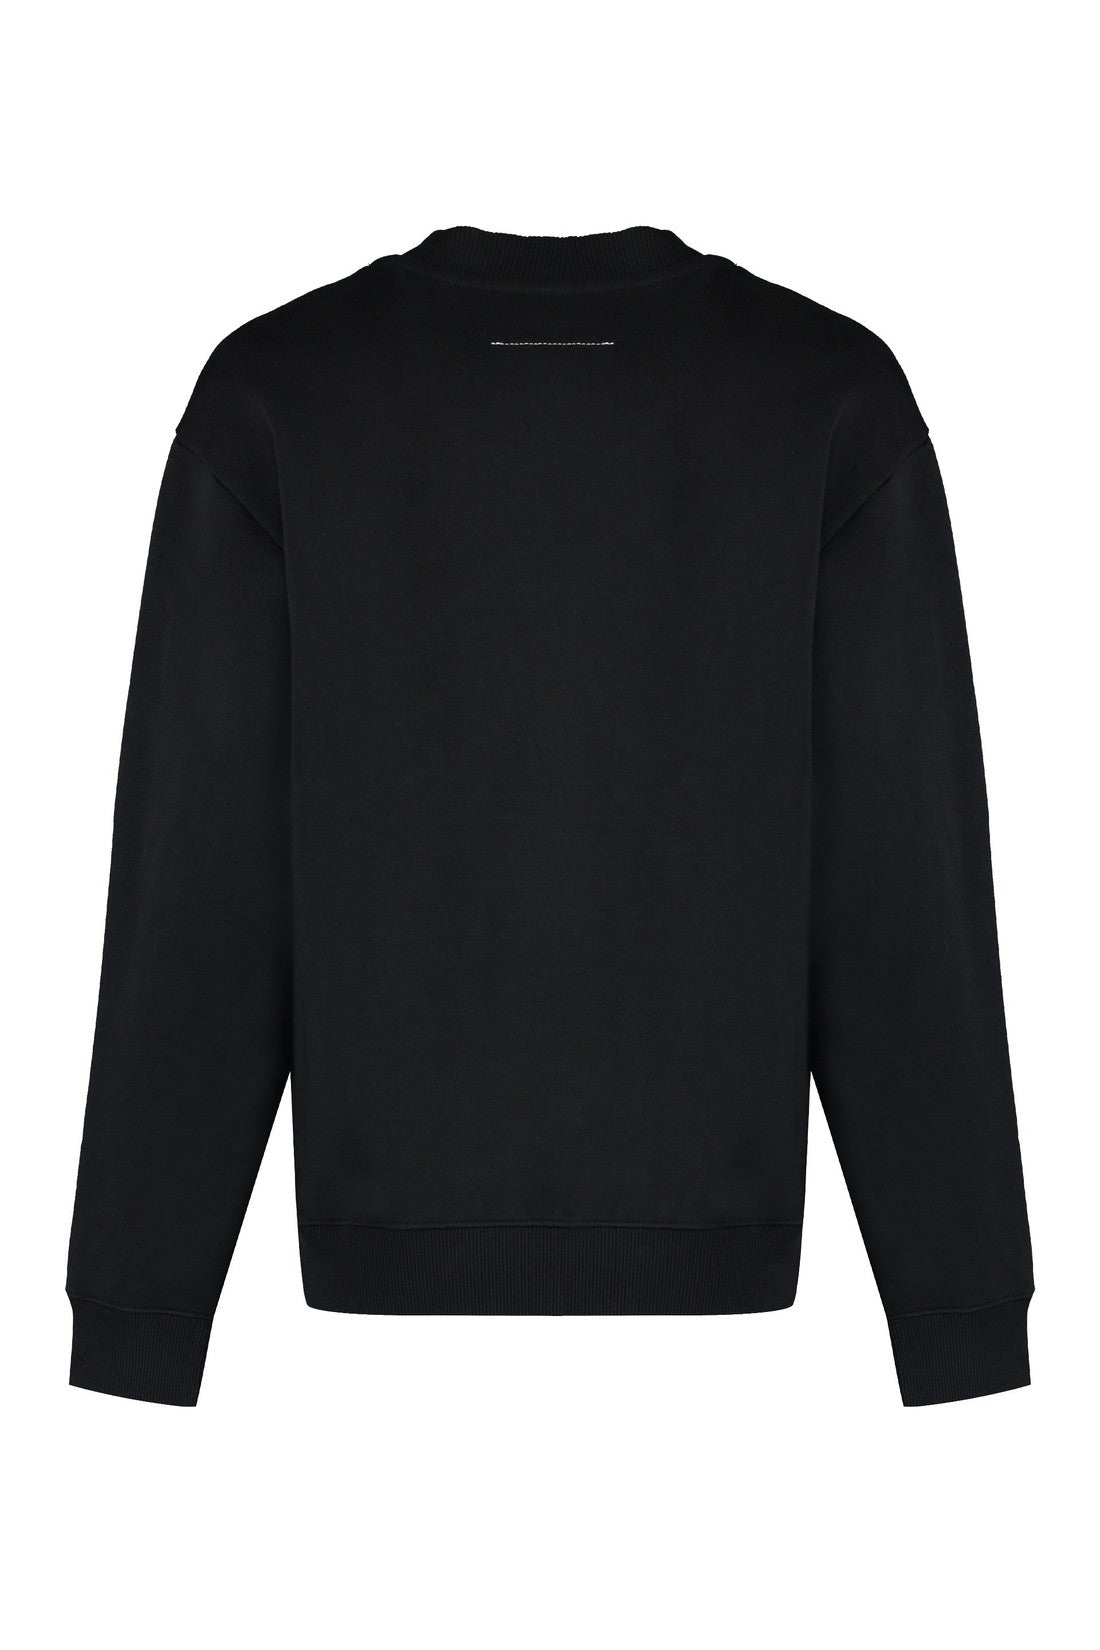 MM6 Maison Margiela-OUTLET-SALE-Cotton crew-neck sweatshirt with logo-ARCHIVIST